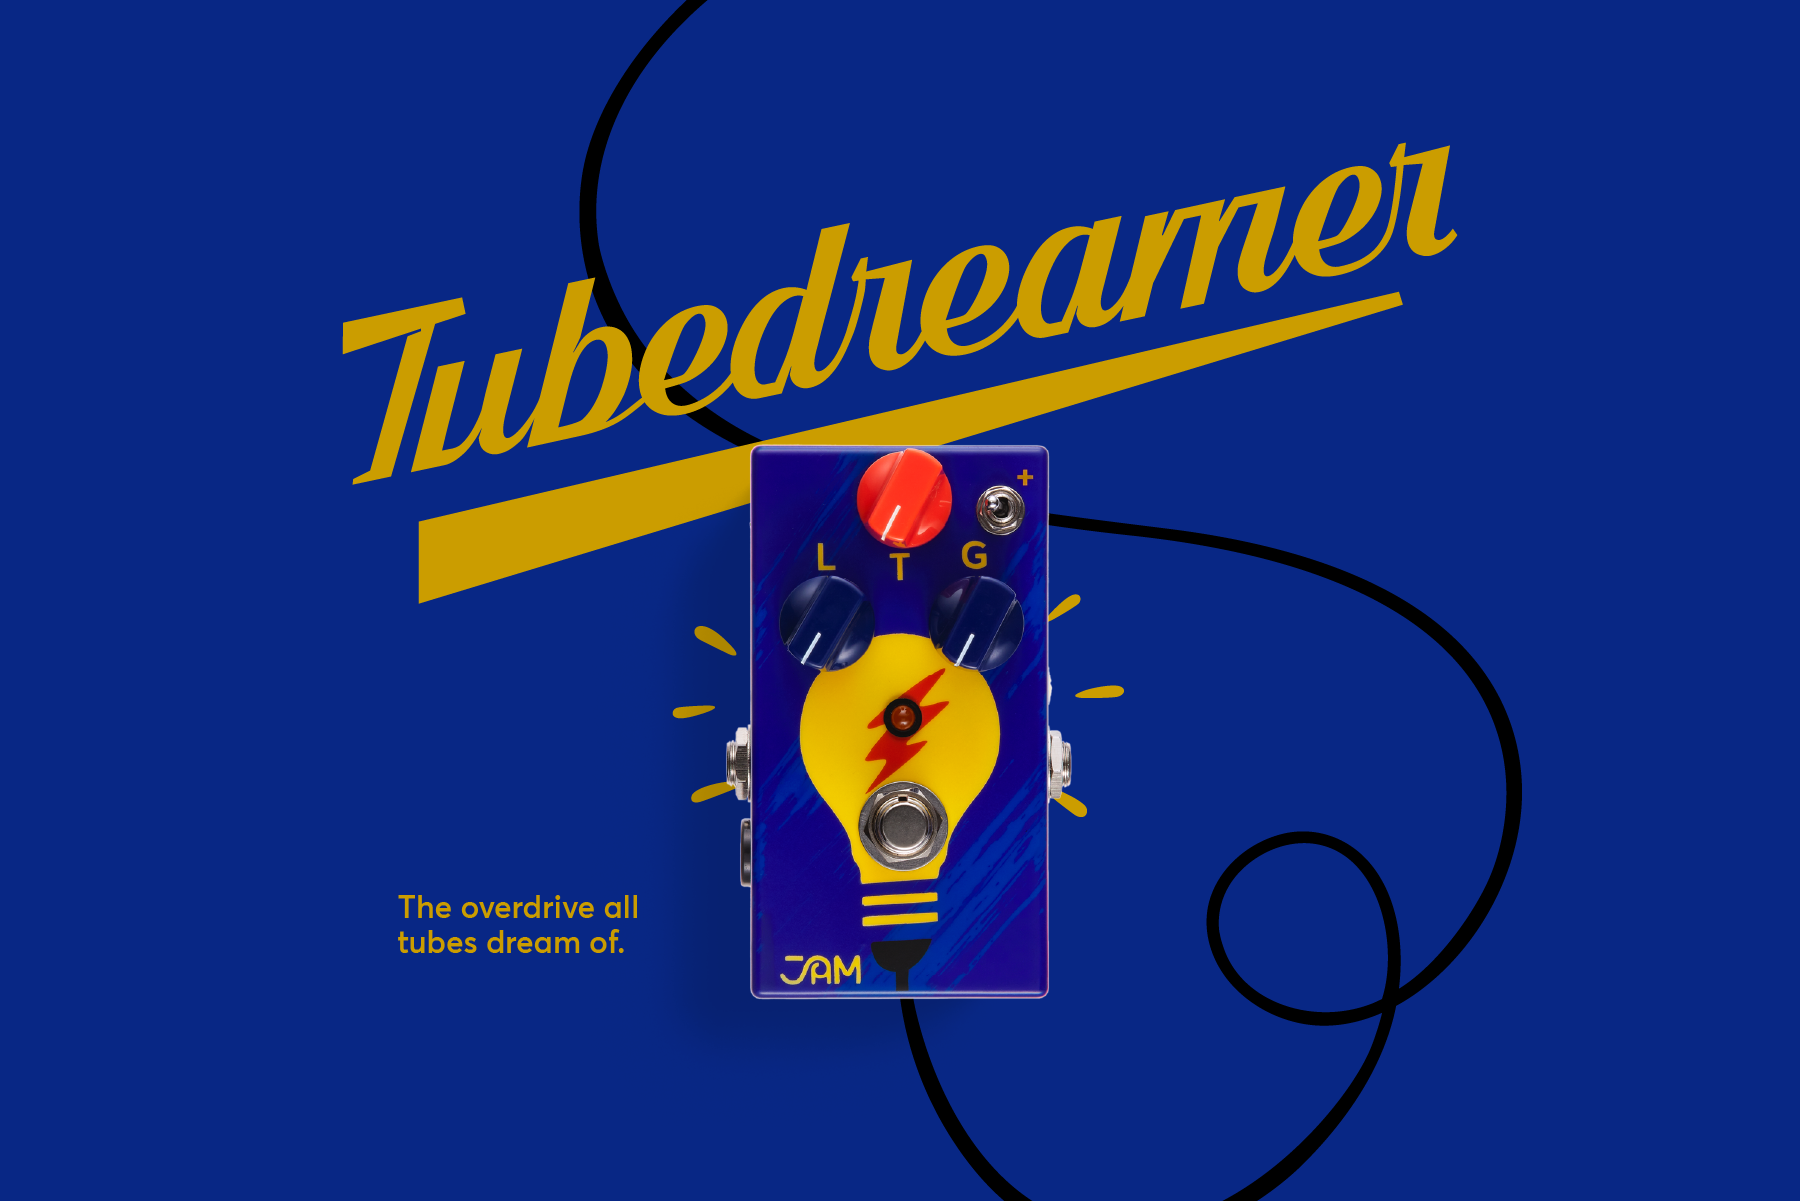 TubeDreamer